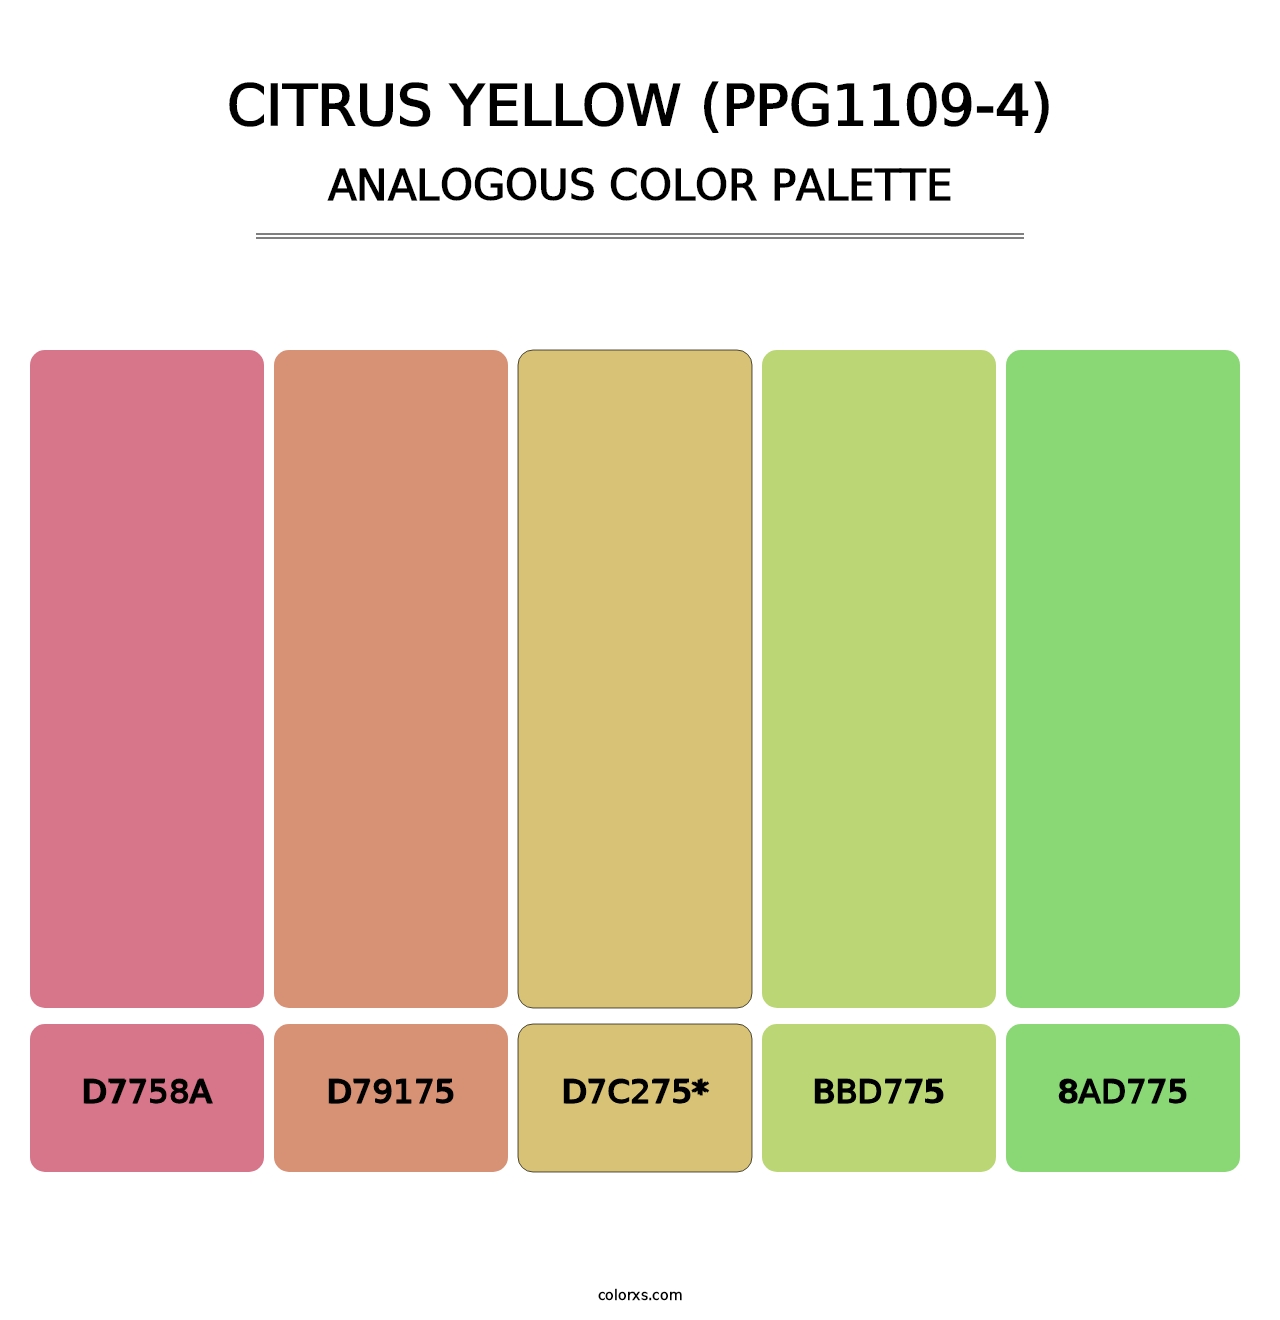 Citrus Yellow (PPG1109-4) - Analogous Color Palette